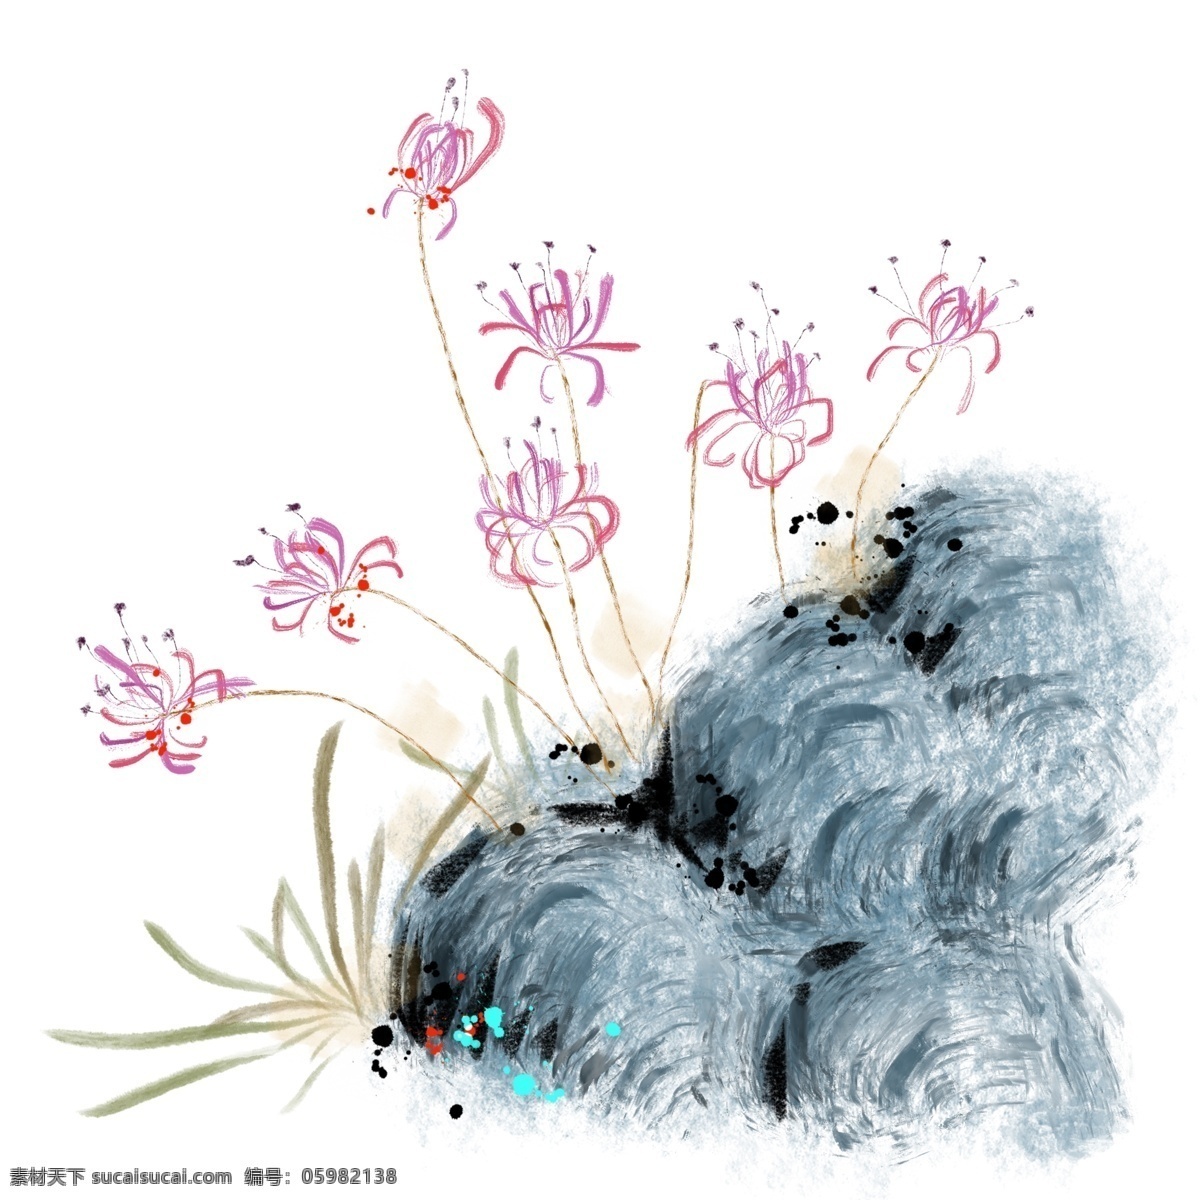 粉色 水墨 彼岸 插画 粉色的花朵 卡通插画 水墨插画 花朵插画 水墨花朵 中国风花朵 彼岸的插画